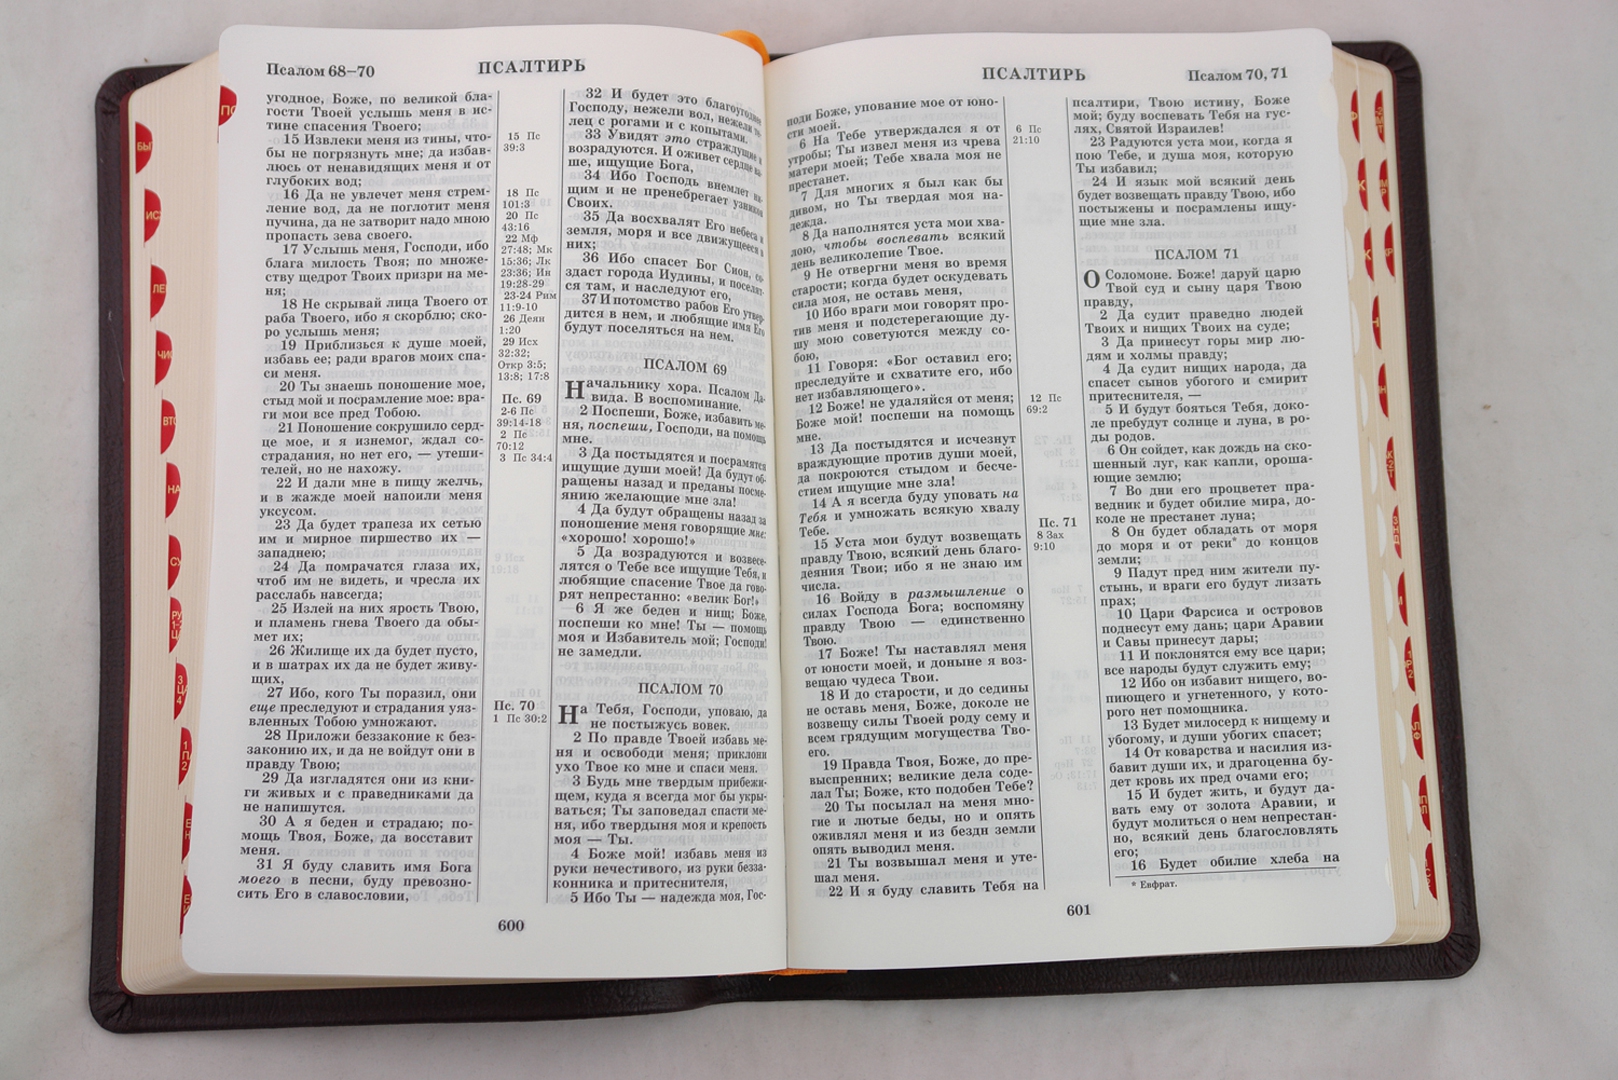 Иллюстрация 1 из 3 для Библия (1196) (без неканонических книг Ветхого Завета) (077TI) вишневый кожаный переплет + футляр | Лабиринт - книги. Источник: Лабиринт